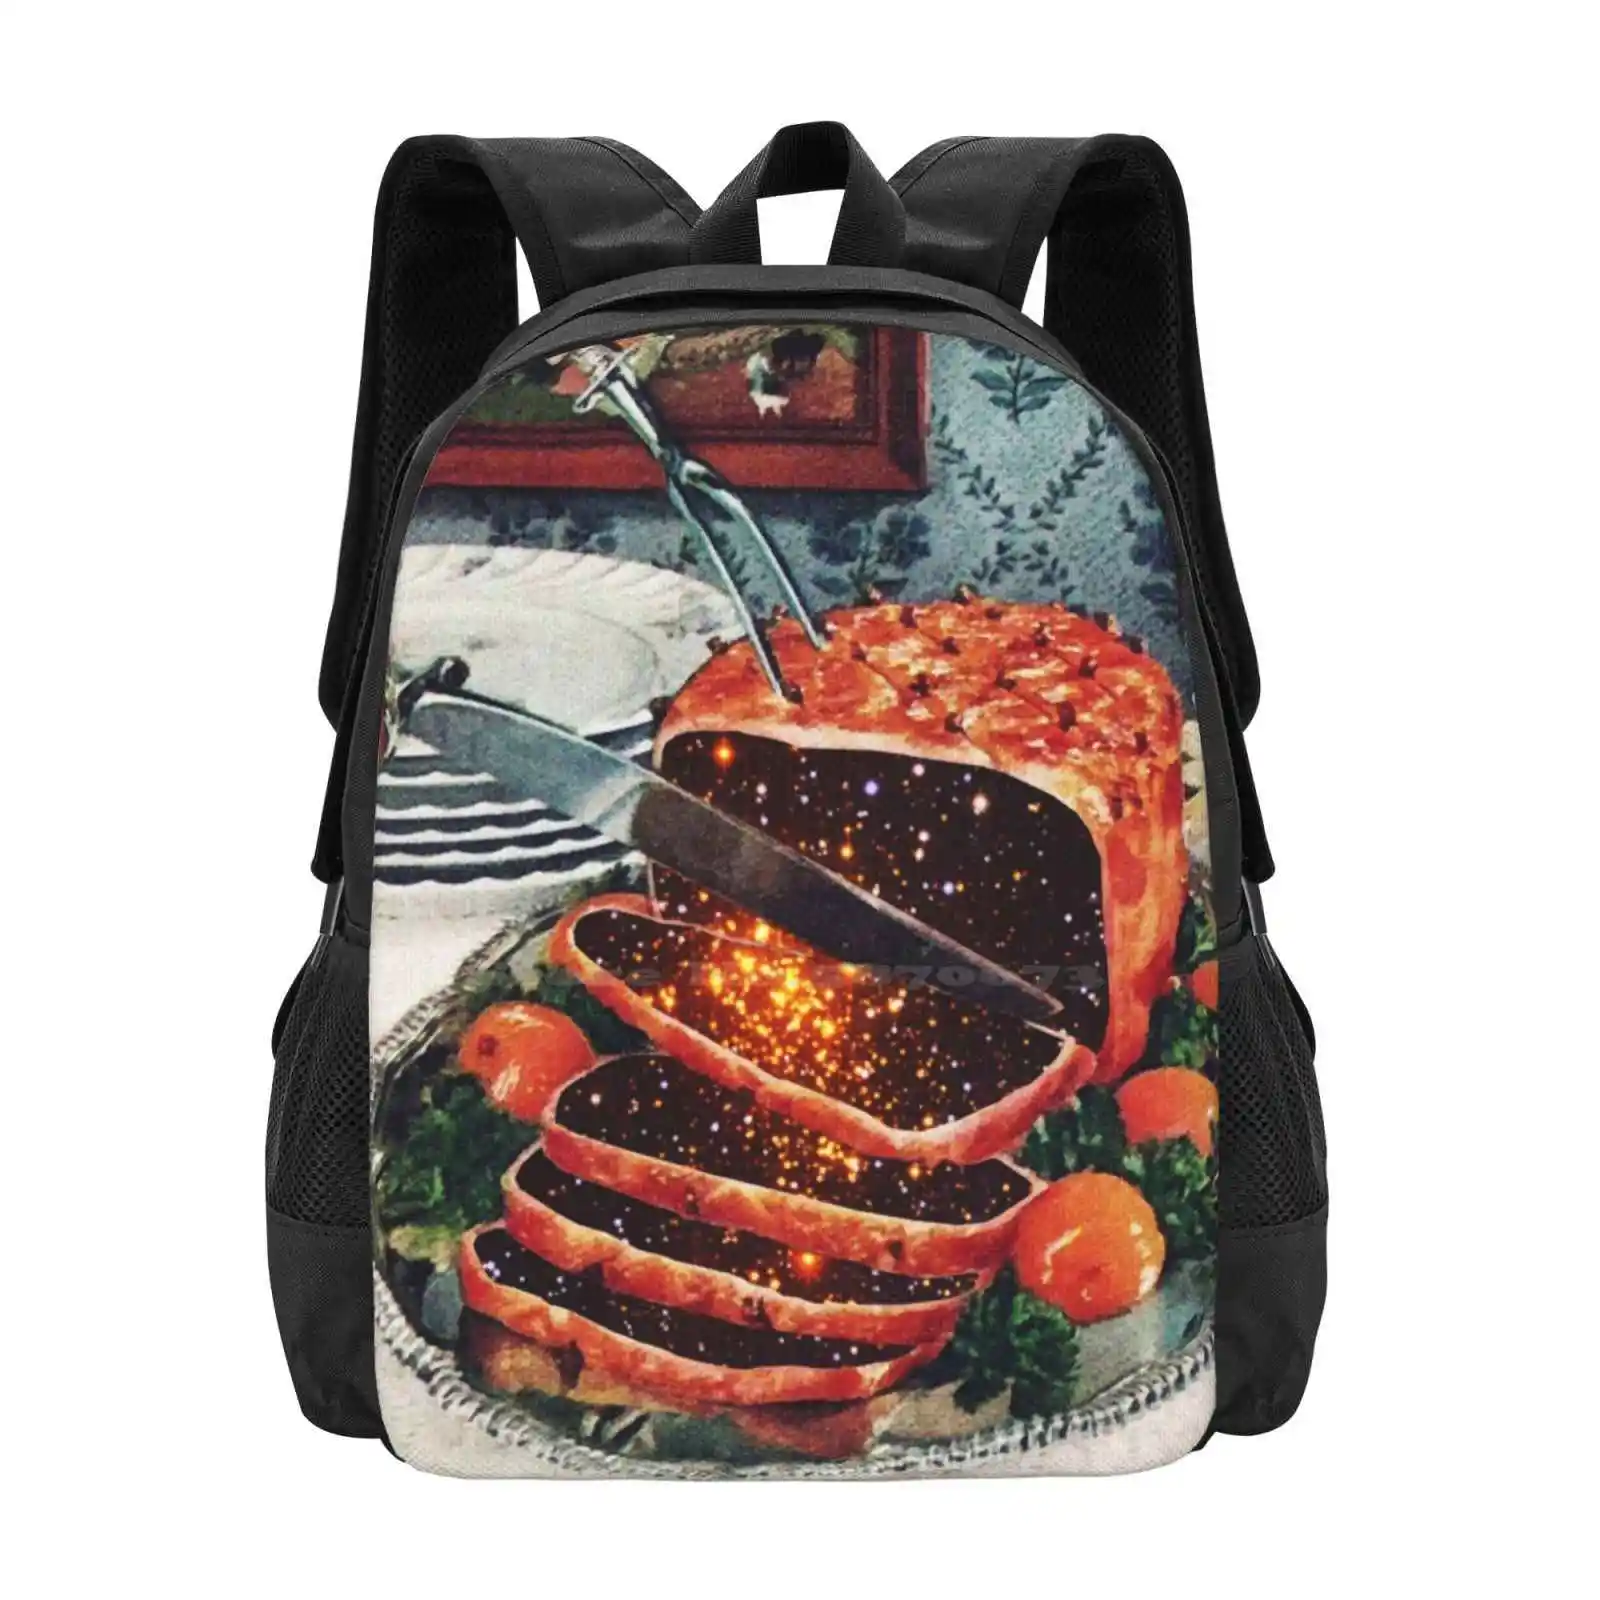 

Дизайнерский рюкзак с рисунком грибов для готовки, школьные сумки для еды, коллажи, искусство, диета Eugenia Loli, Рождественский ужин на День Благодарения